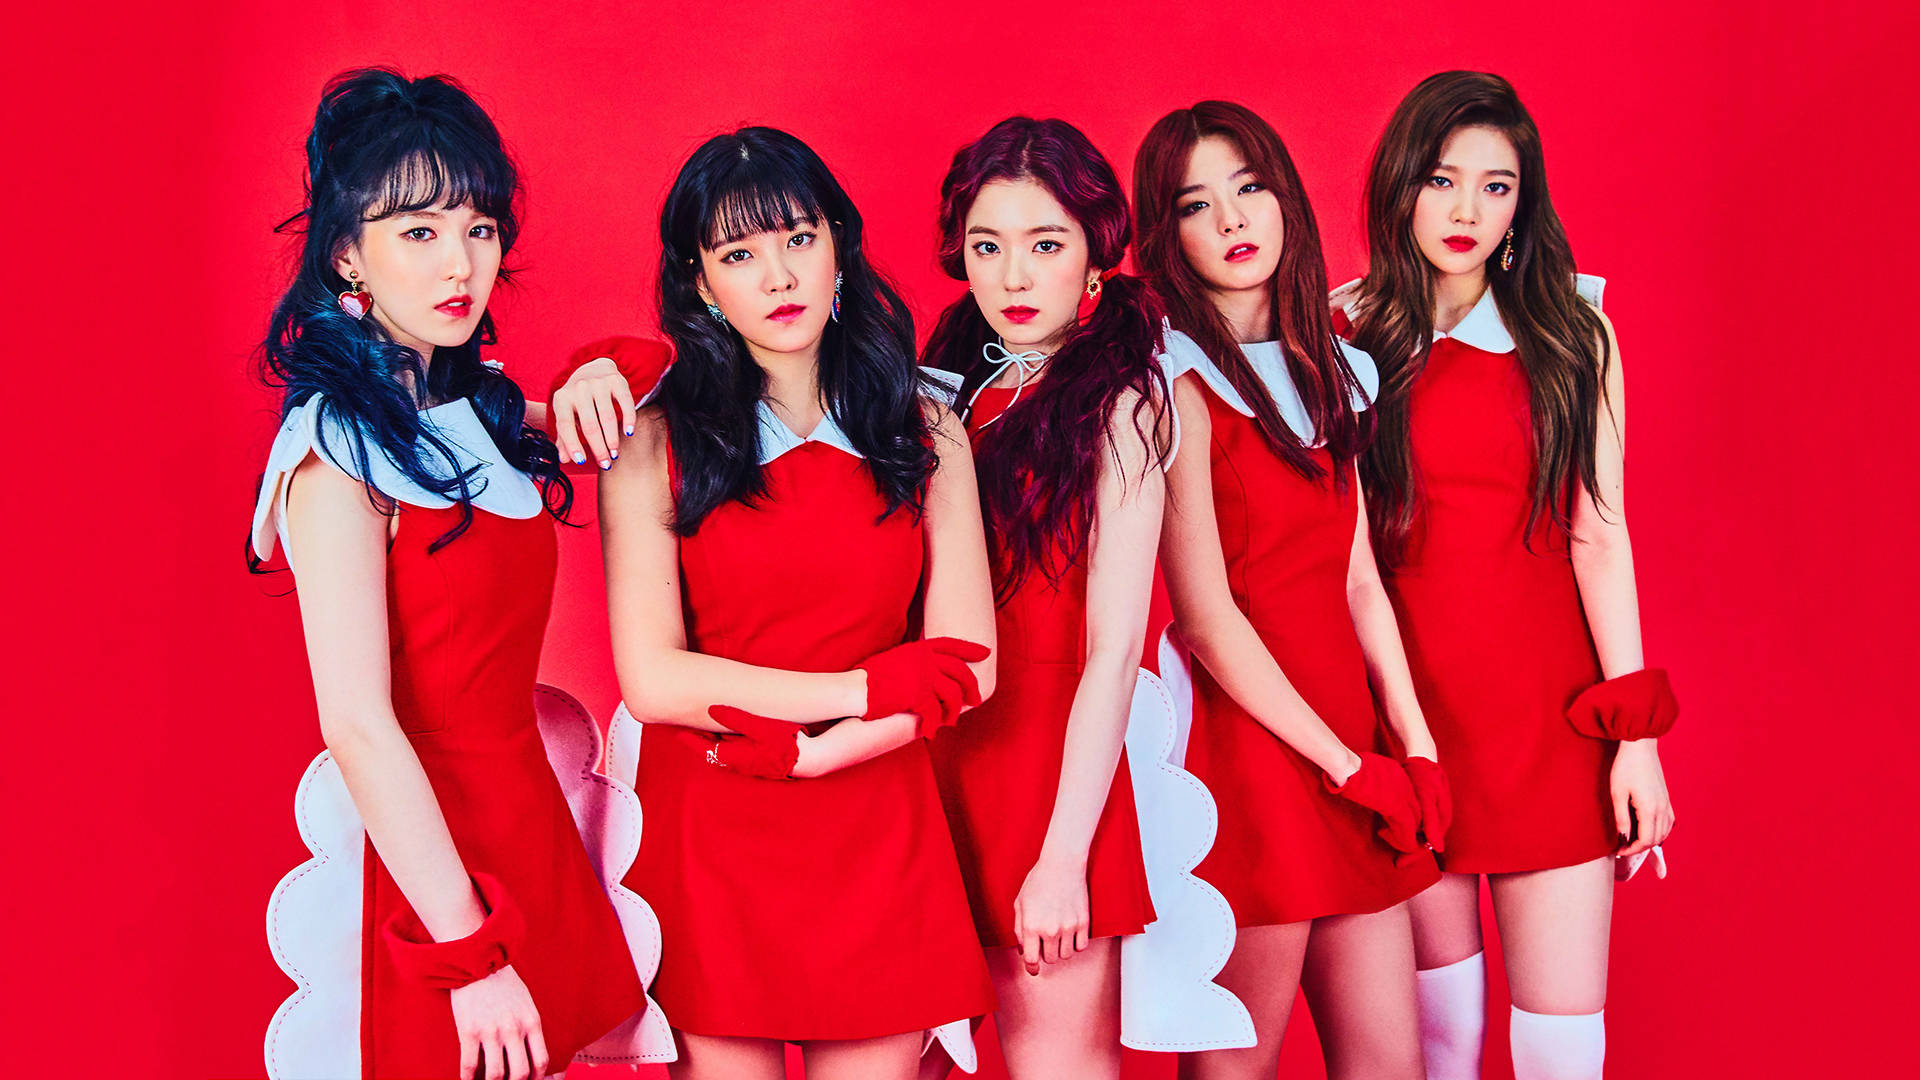 [100 ] Red Velvet Wallpapers For Free